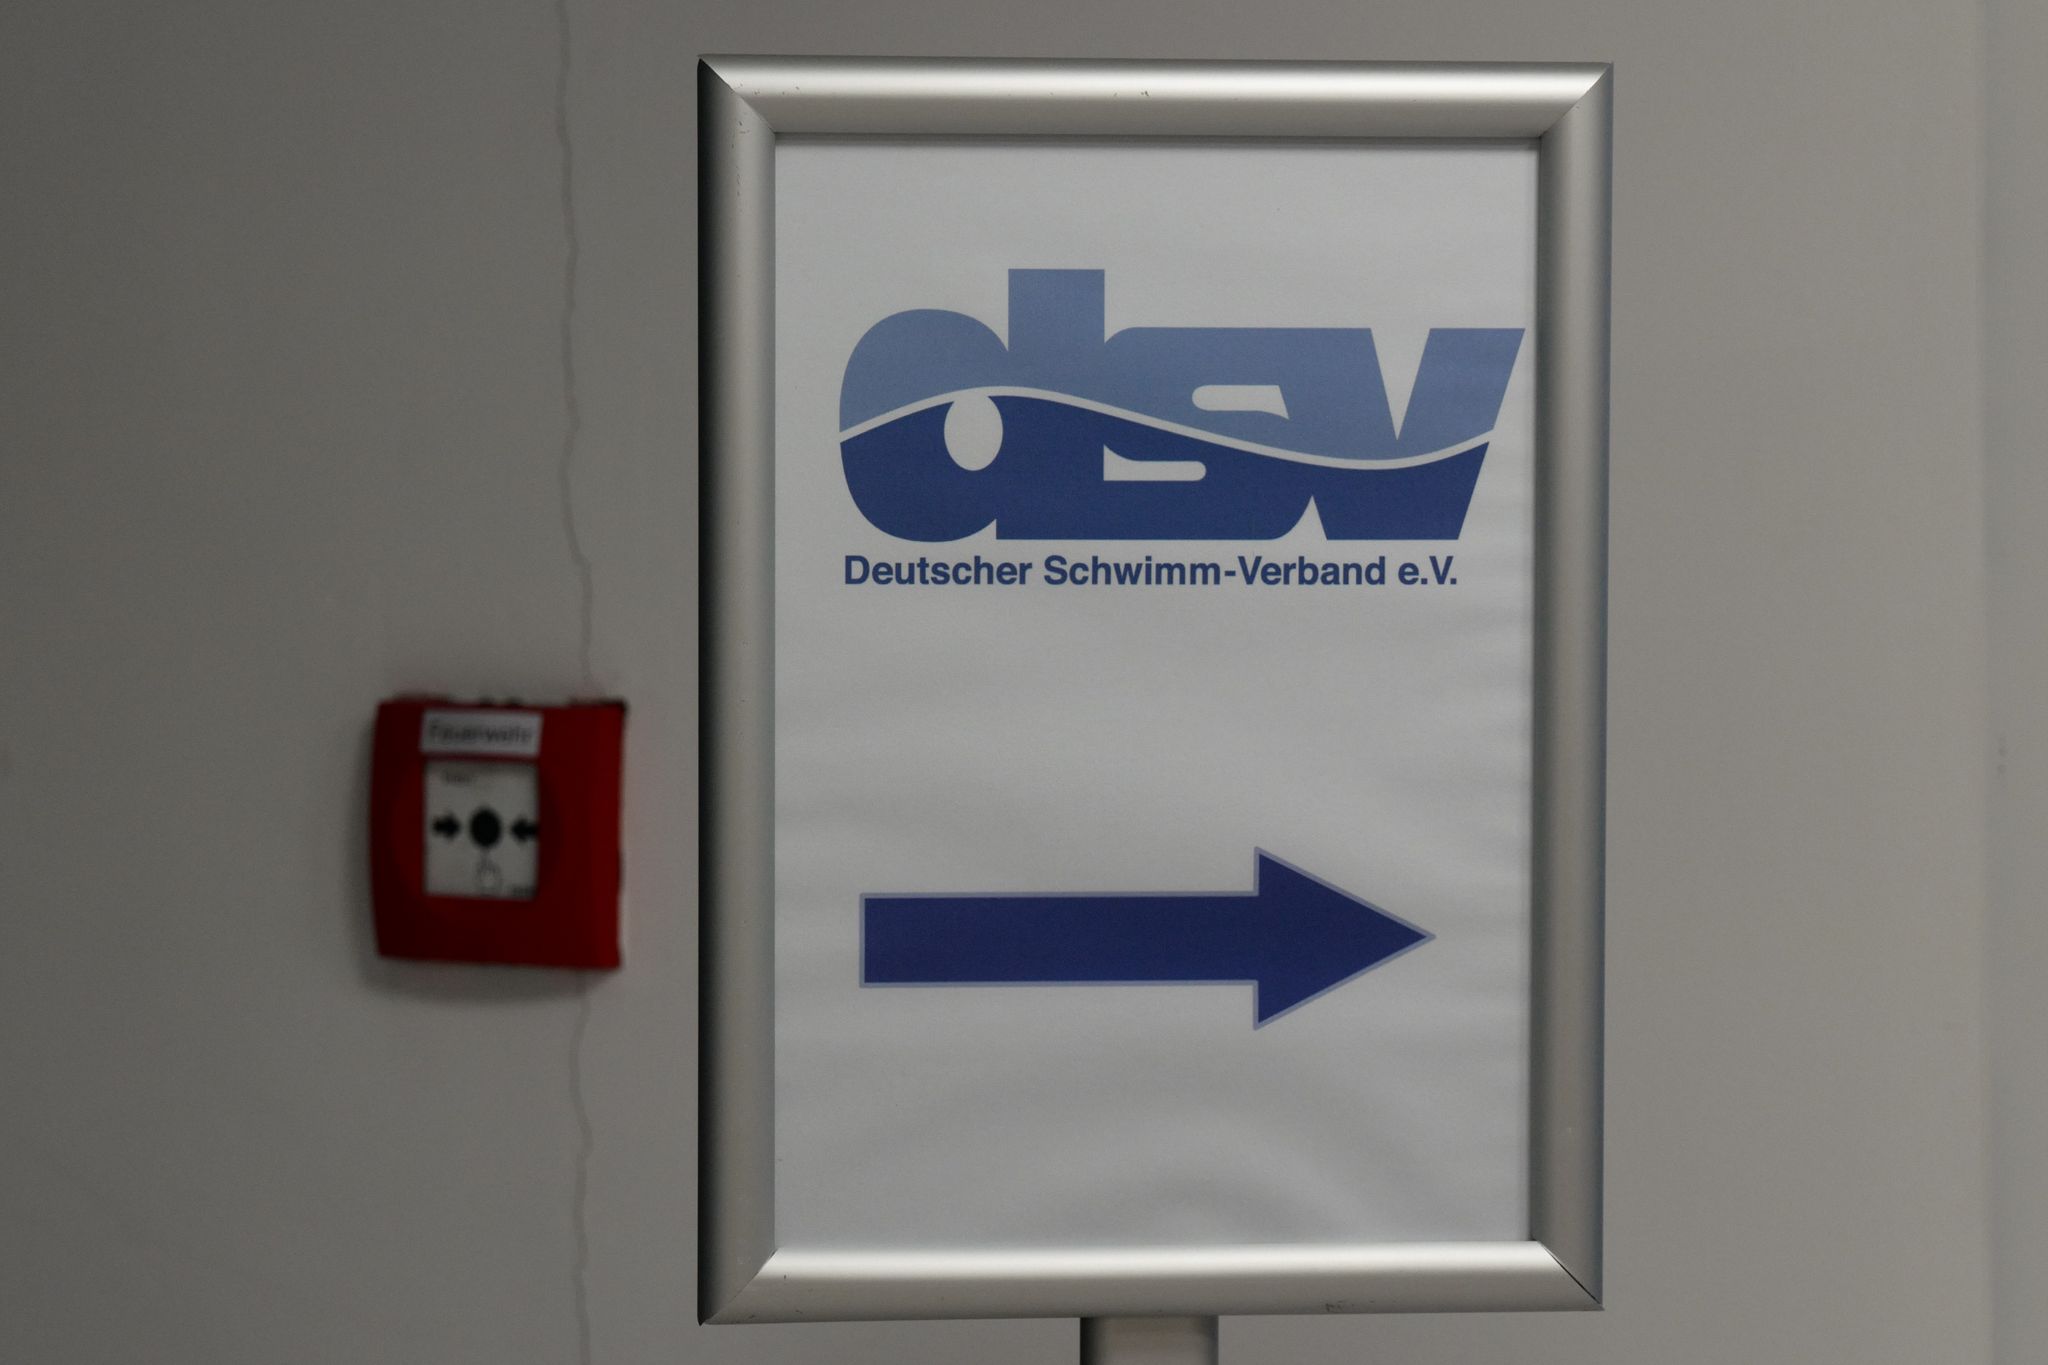 Ein Aufsteller mit dem Logo des Deutschen Schwimm-Verbandes (DSV).